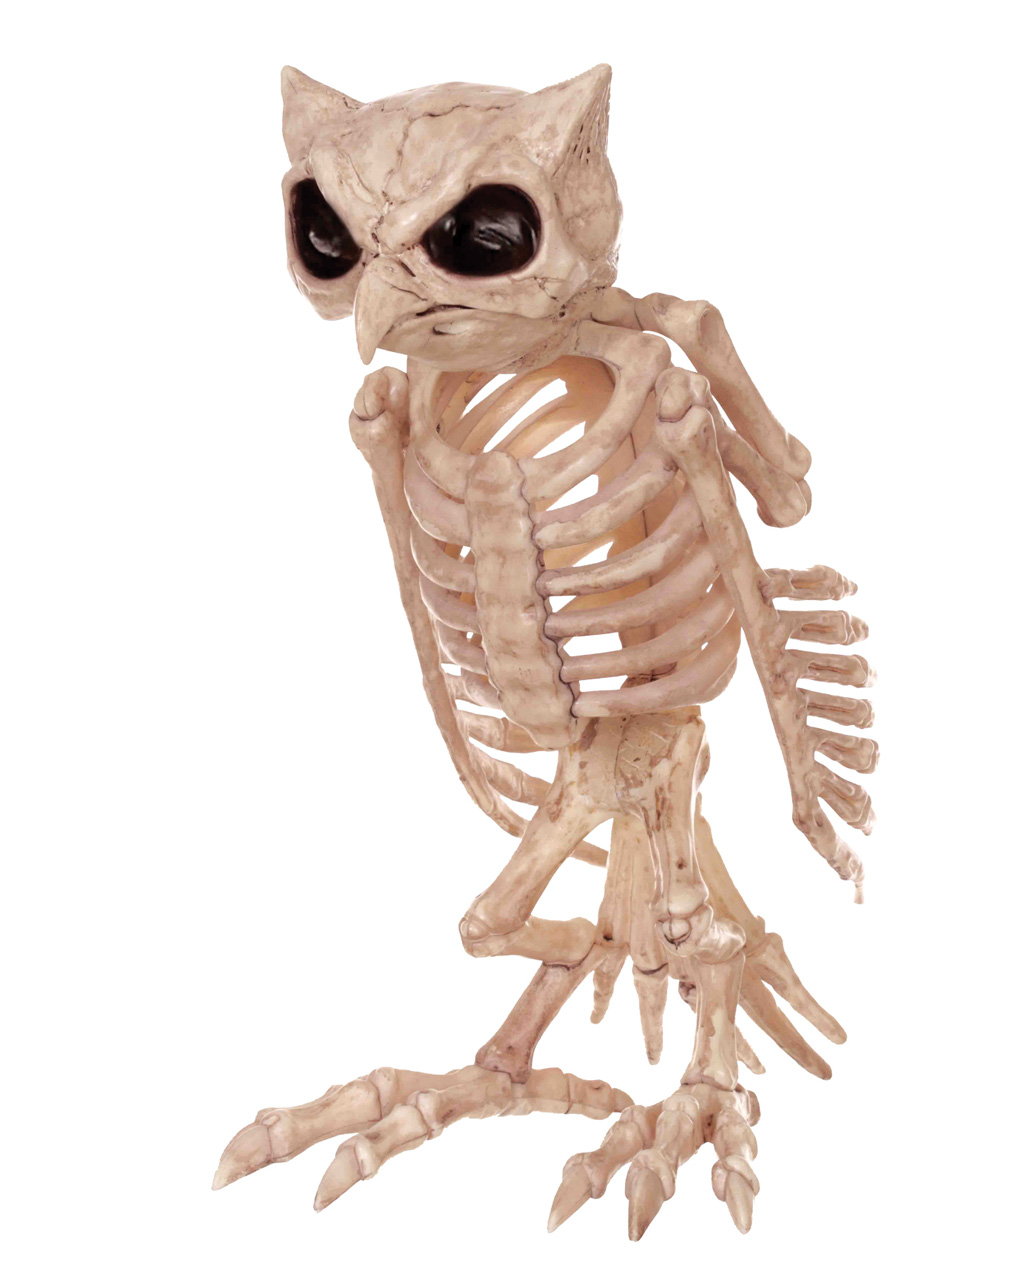 Eulen Skelett als Knochen Deko für Halloween | Horror-Shop.com